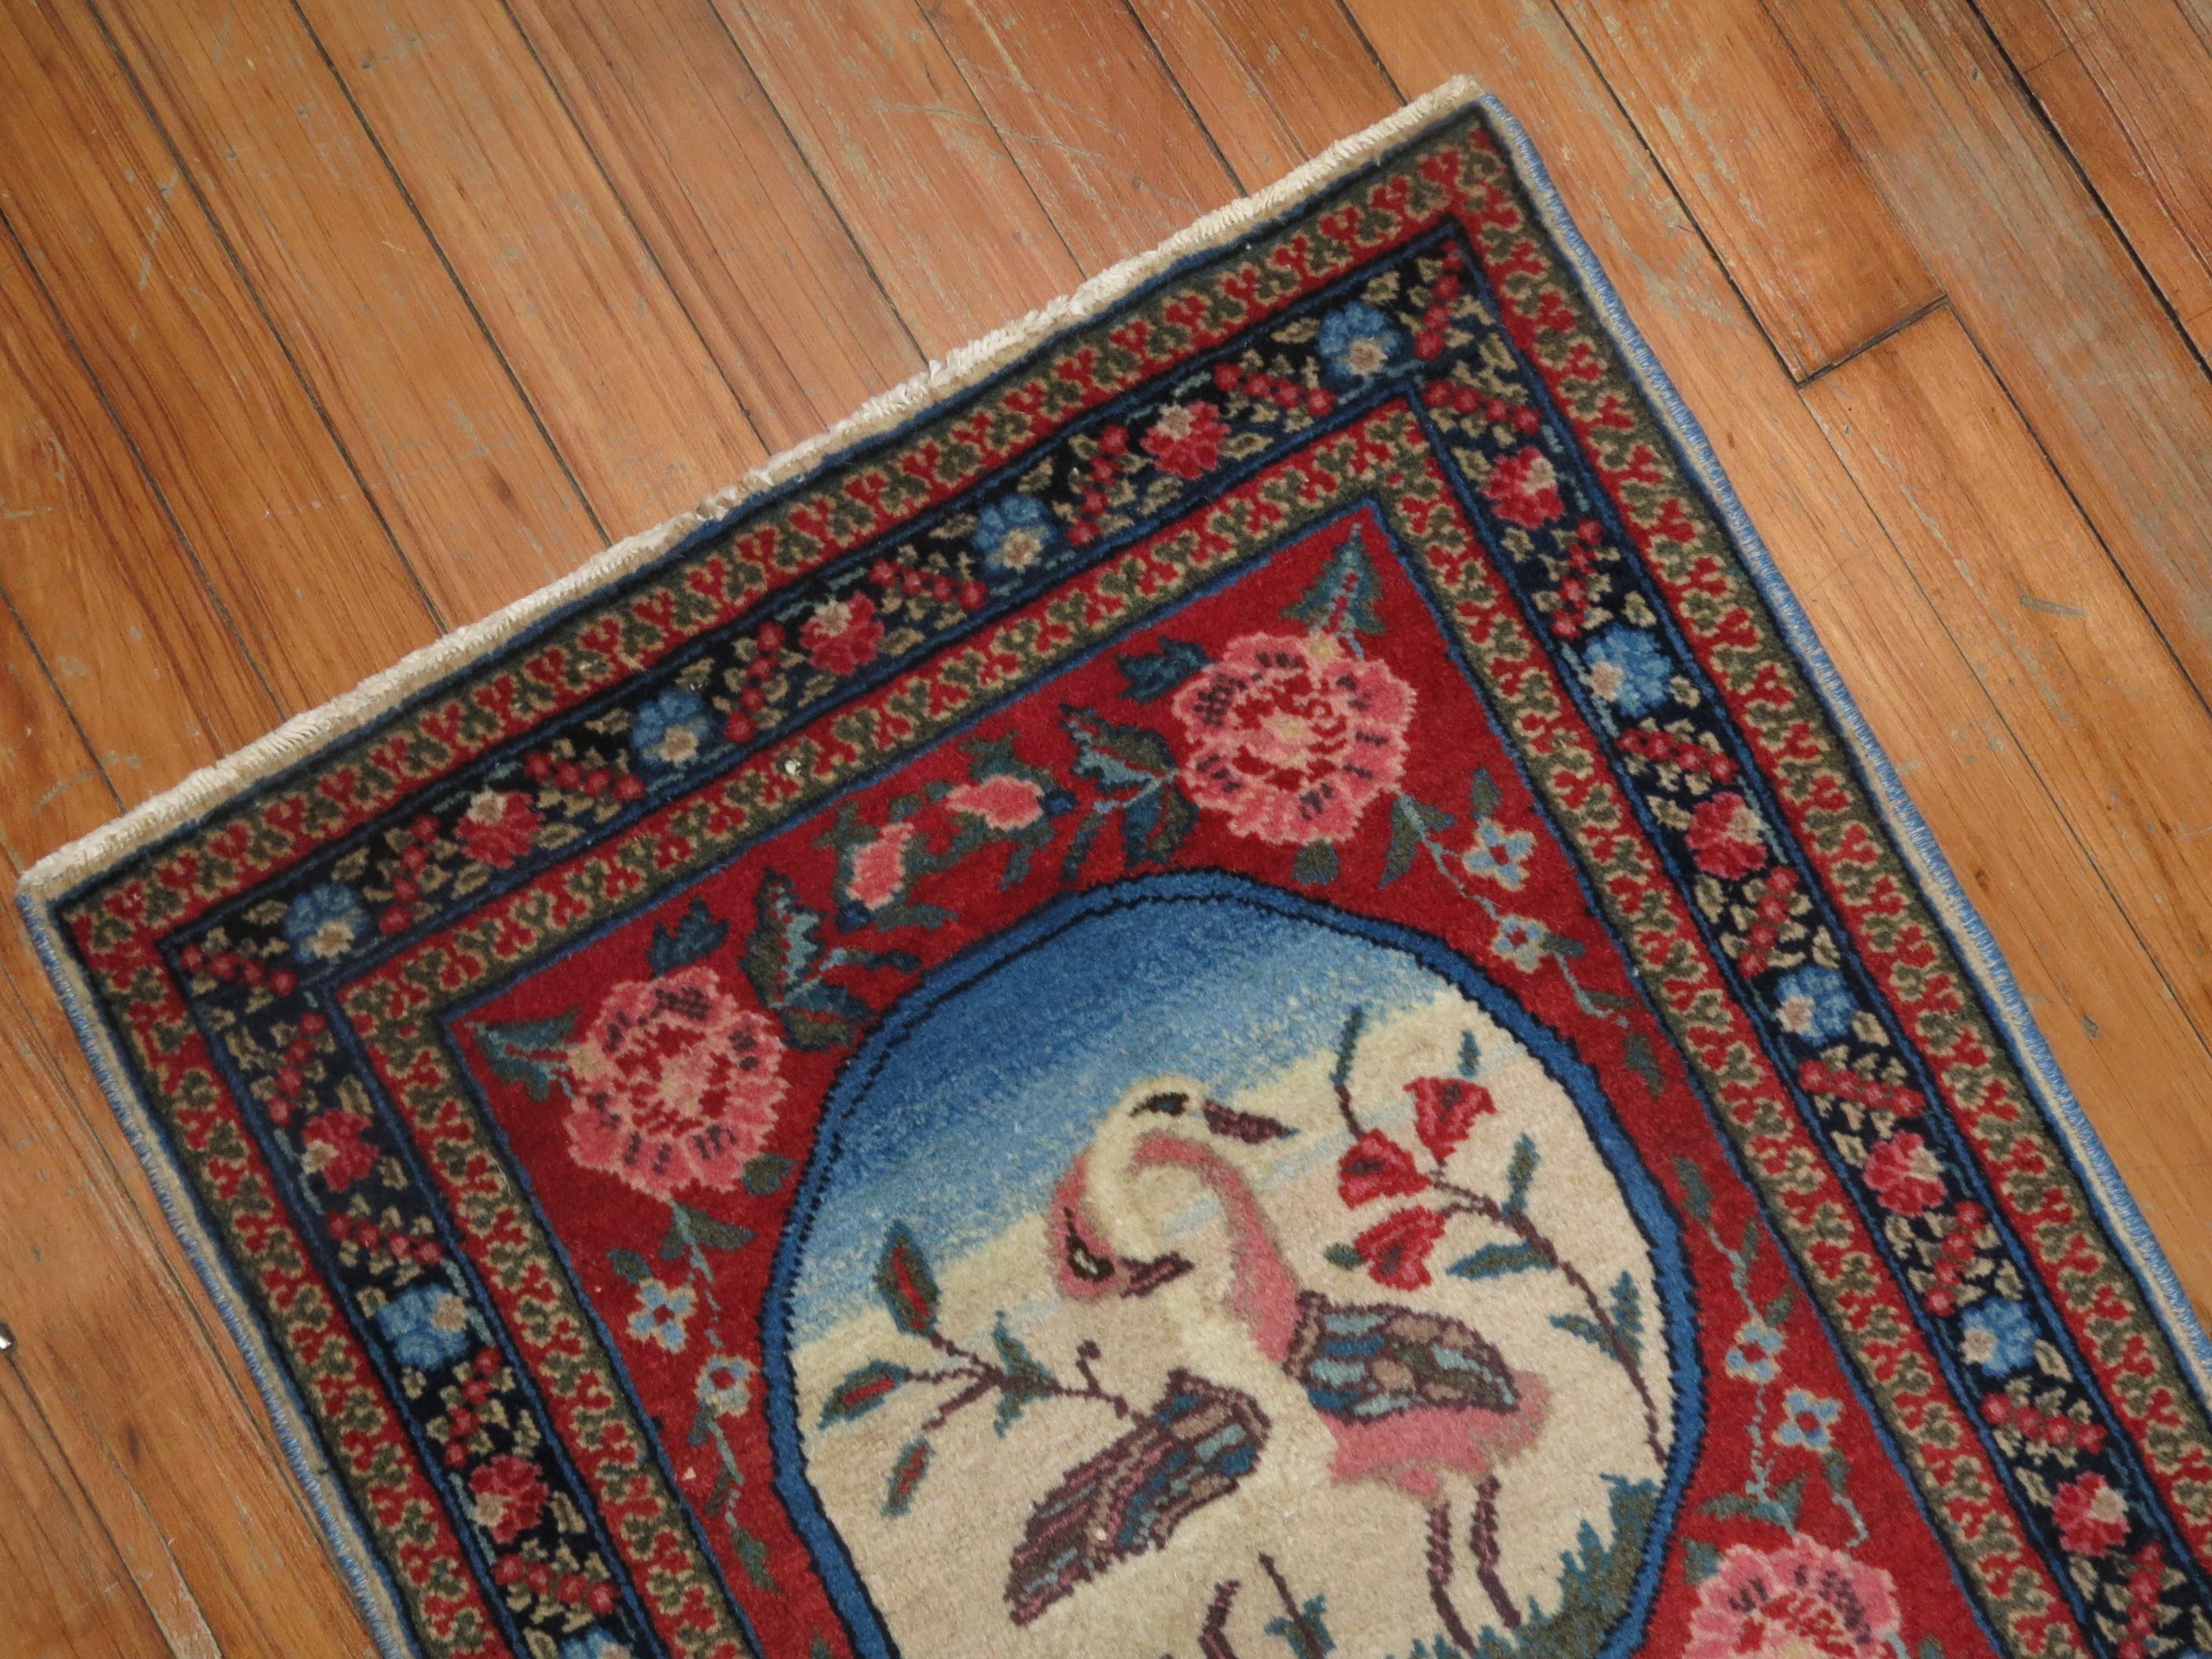 Un authentique tapis persan pictural du 20e siècle avec deux cygnes amoureux.